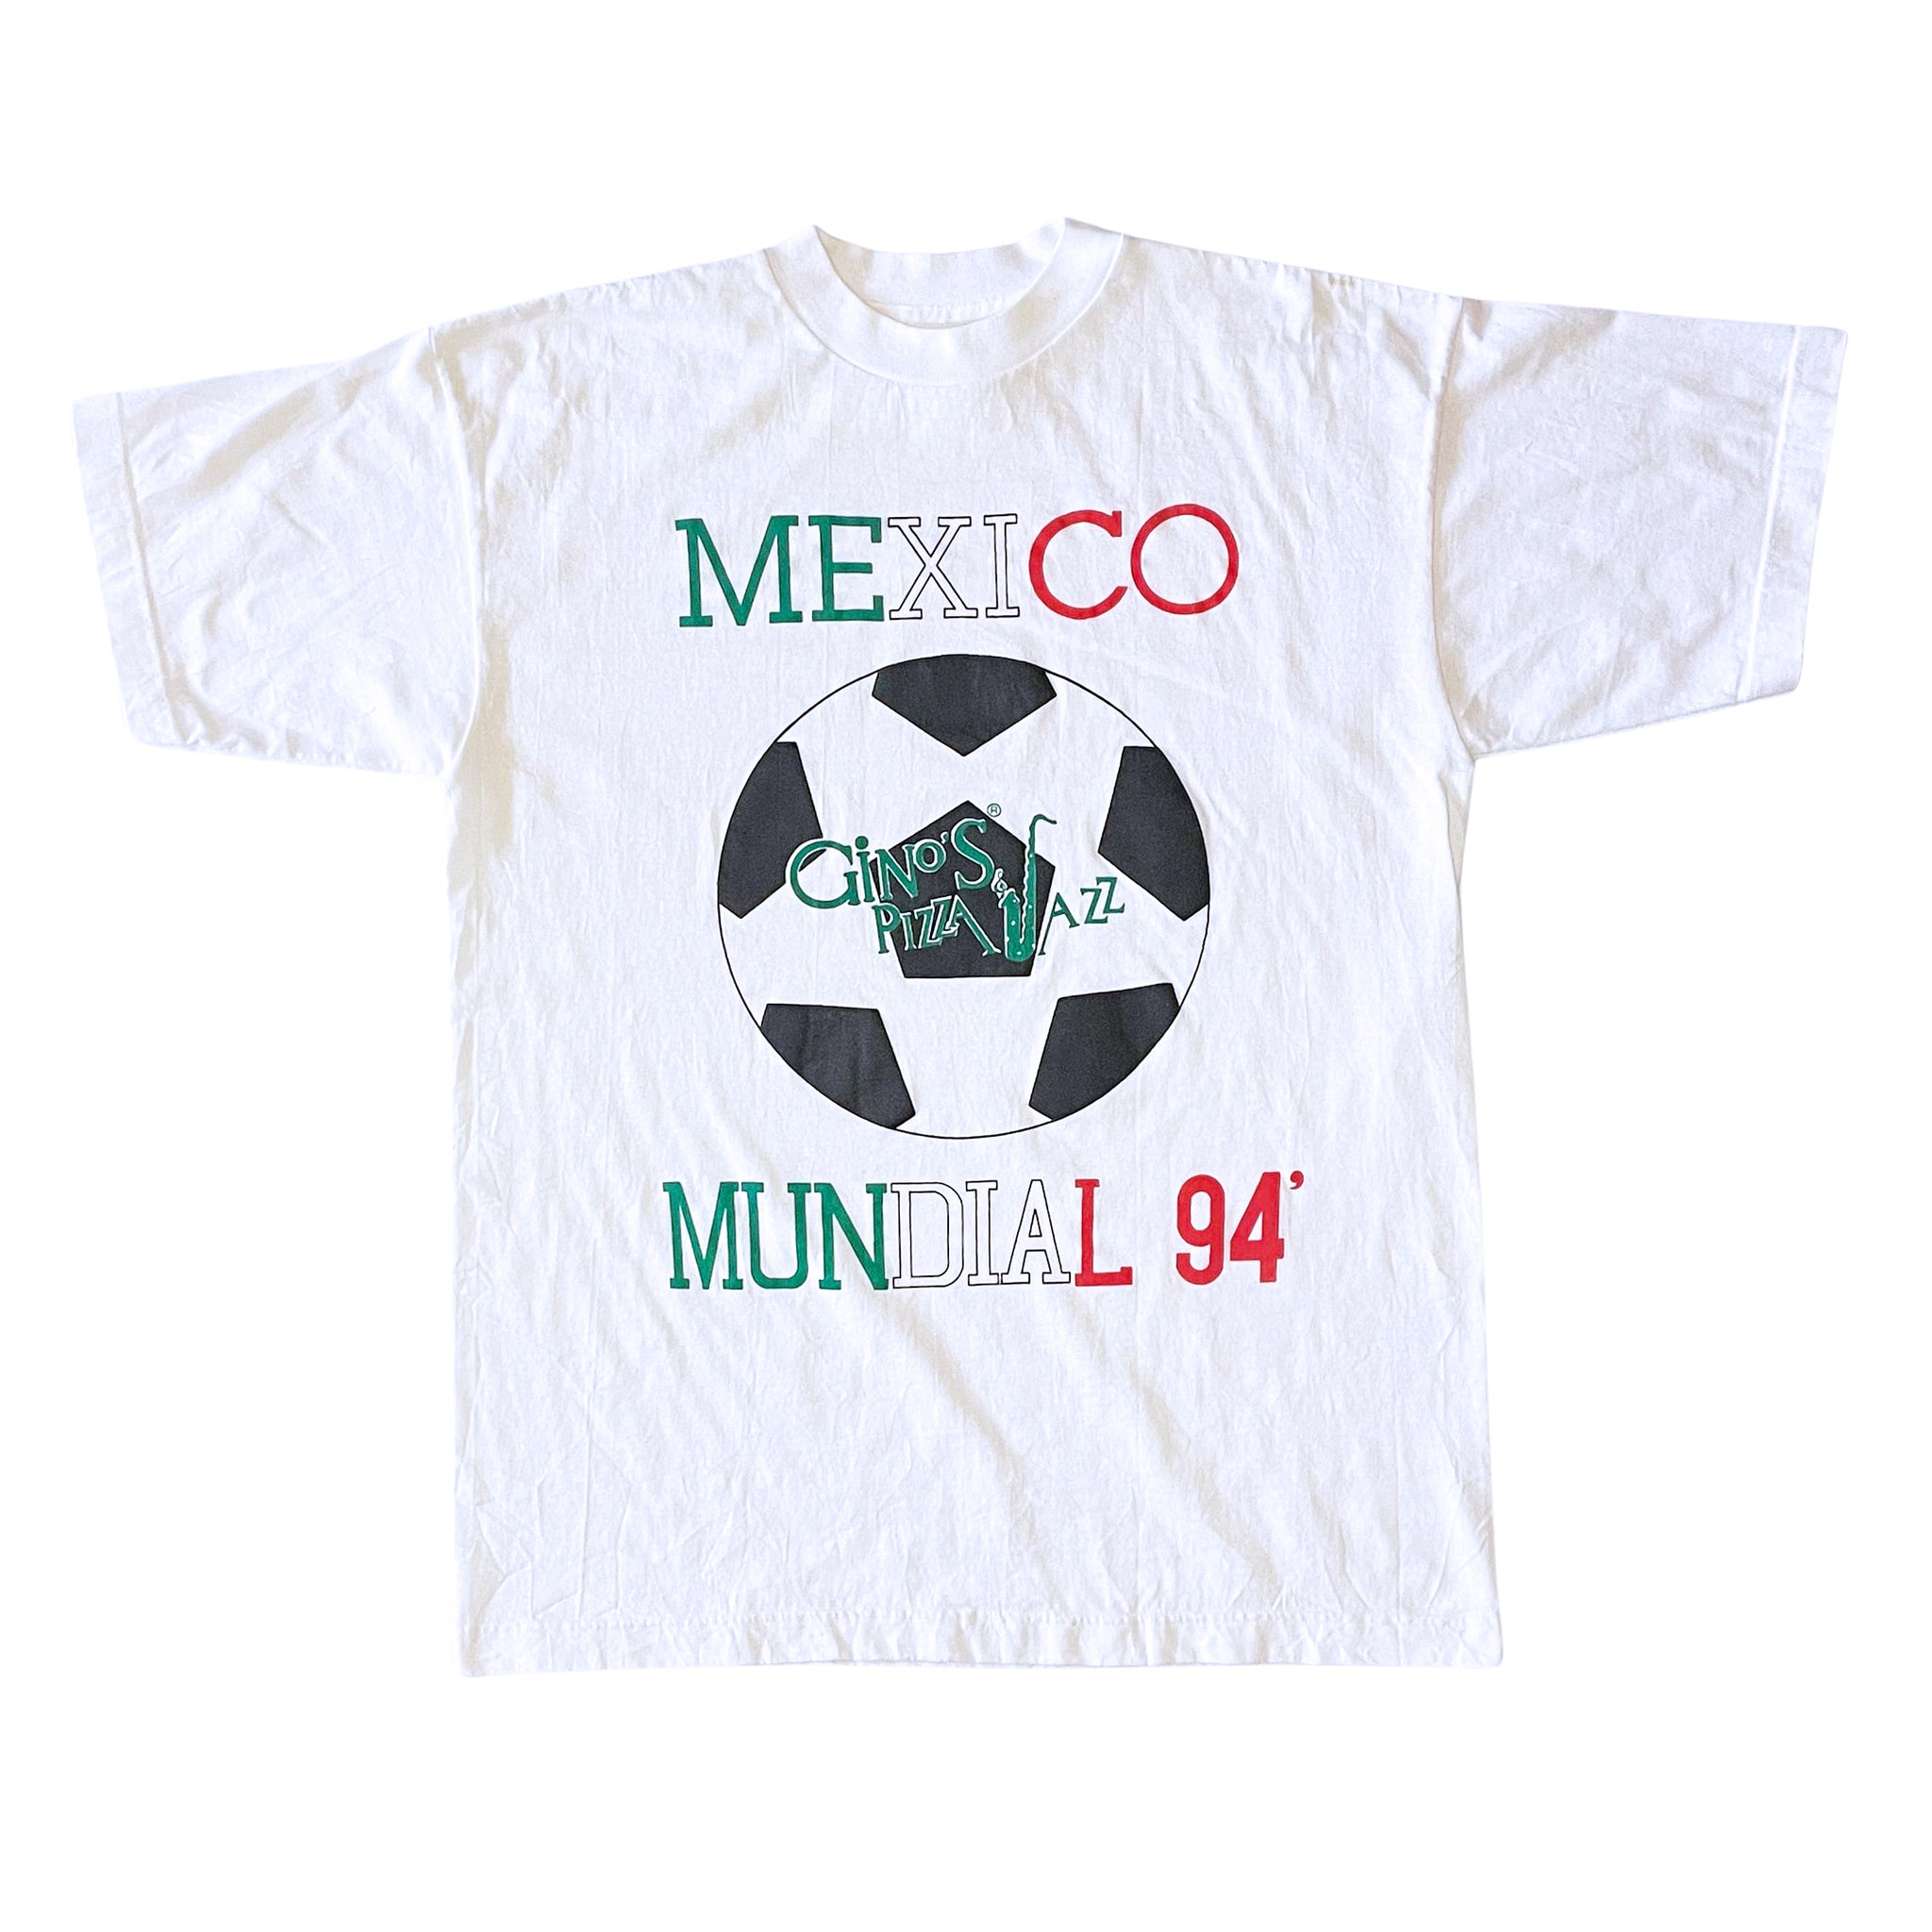 Mexico Mundial 94 T-Shirt - M